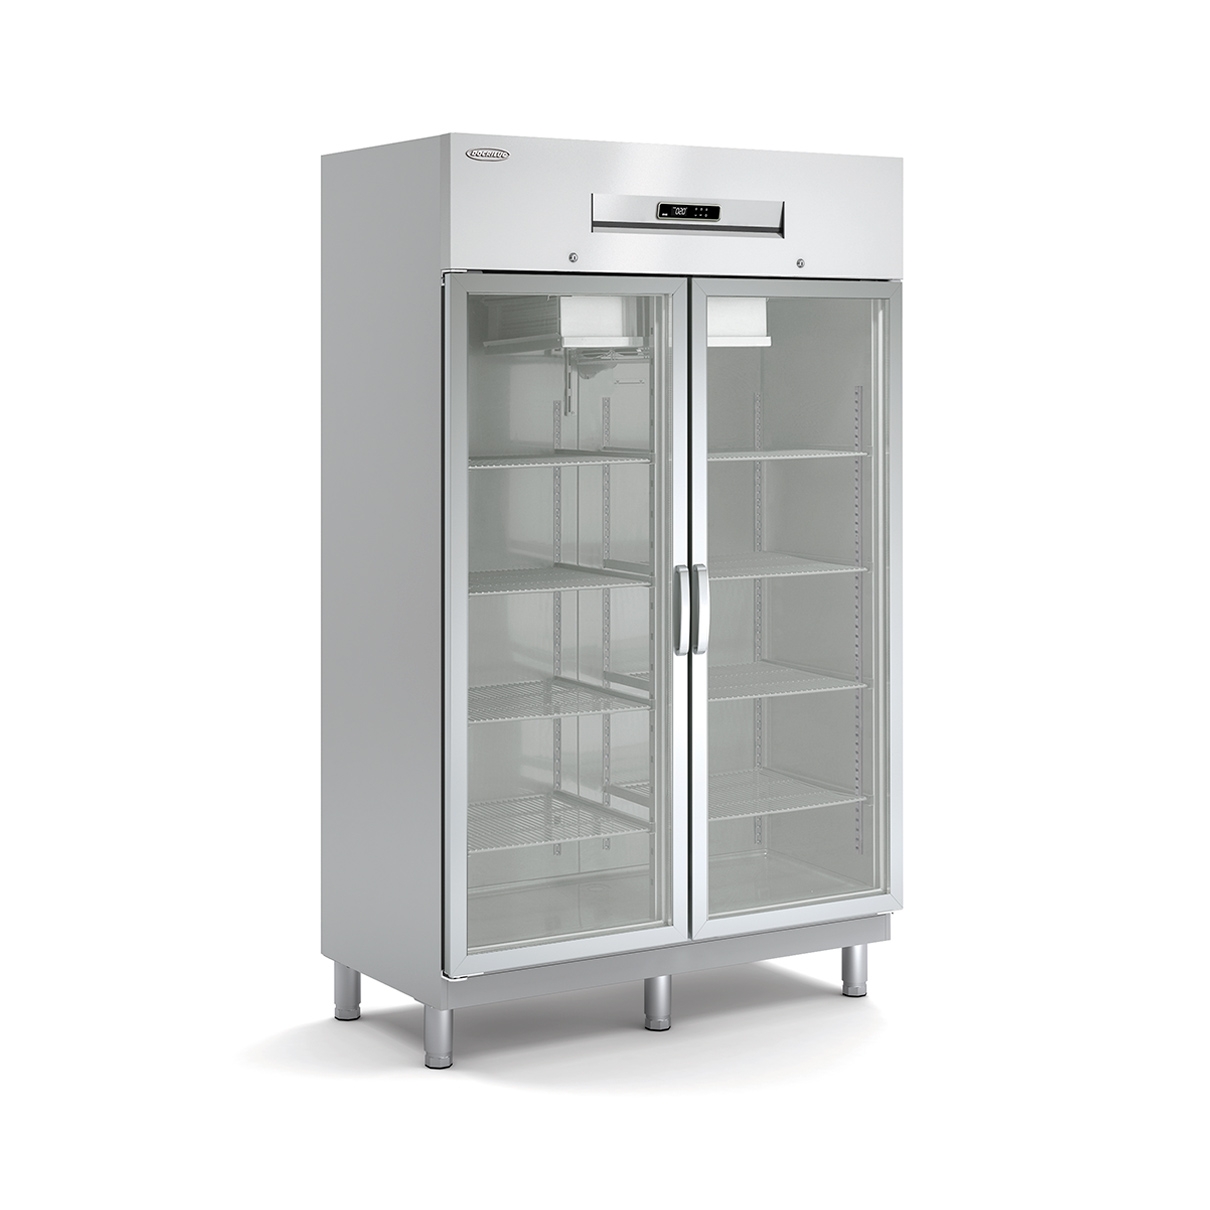 Euro Snack Refrigerated Cabinet AE-125-2-E